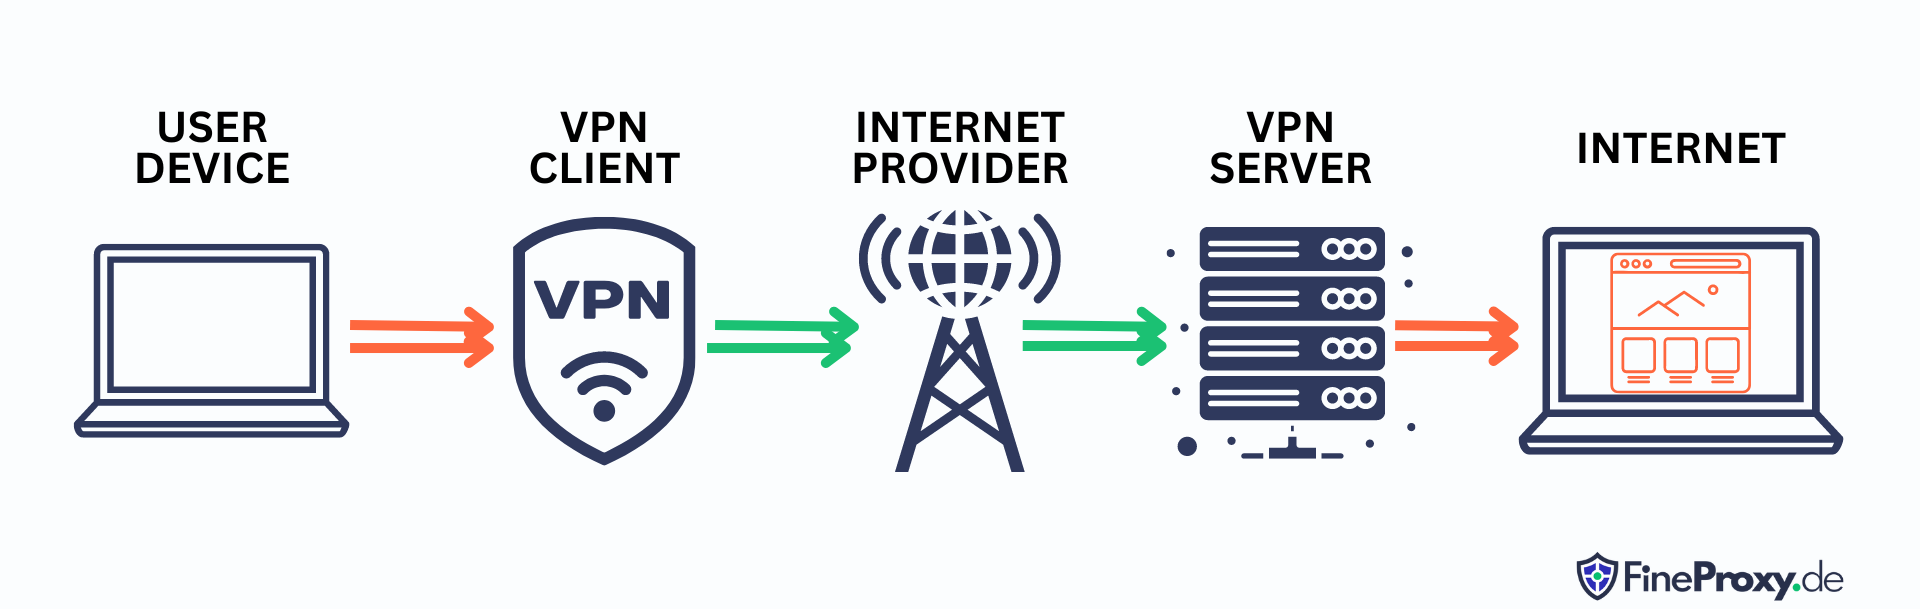 VPN 서비스는 어떻게 작동하나요?